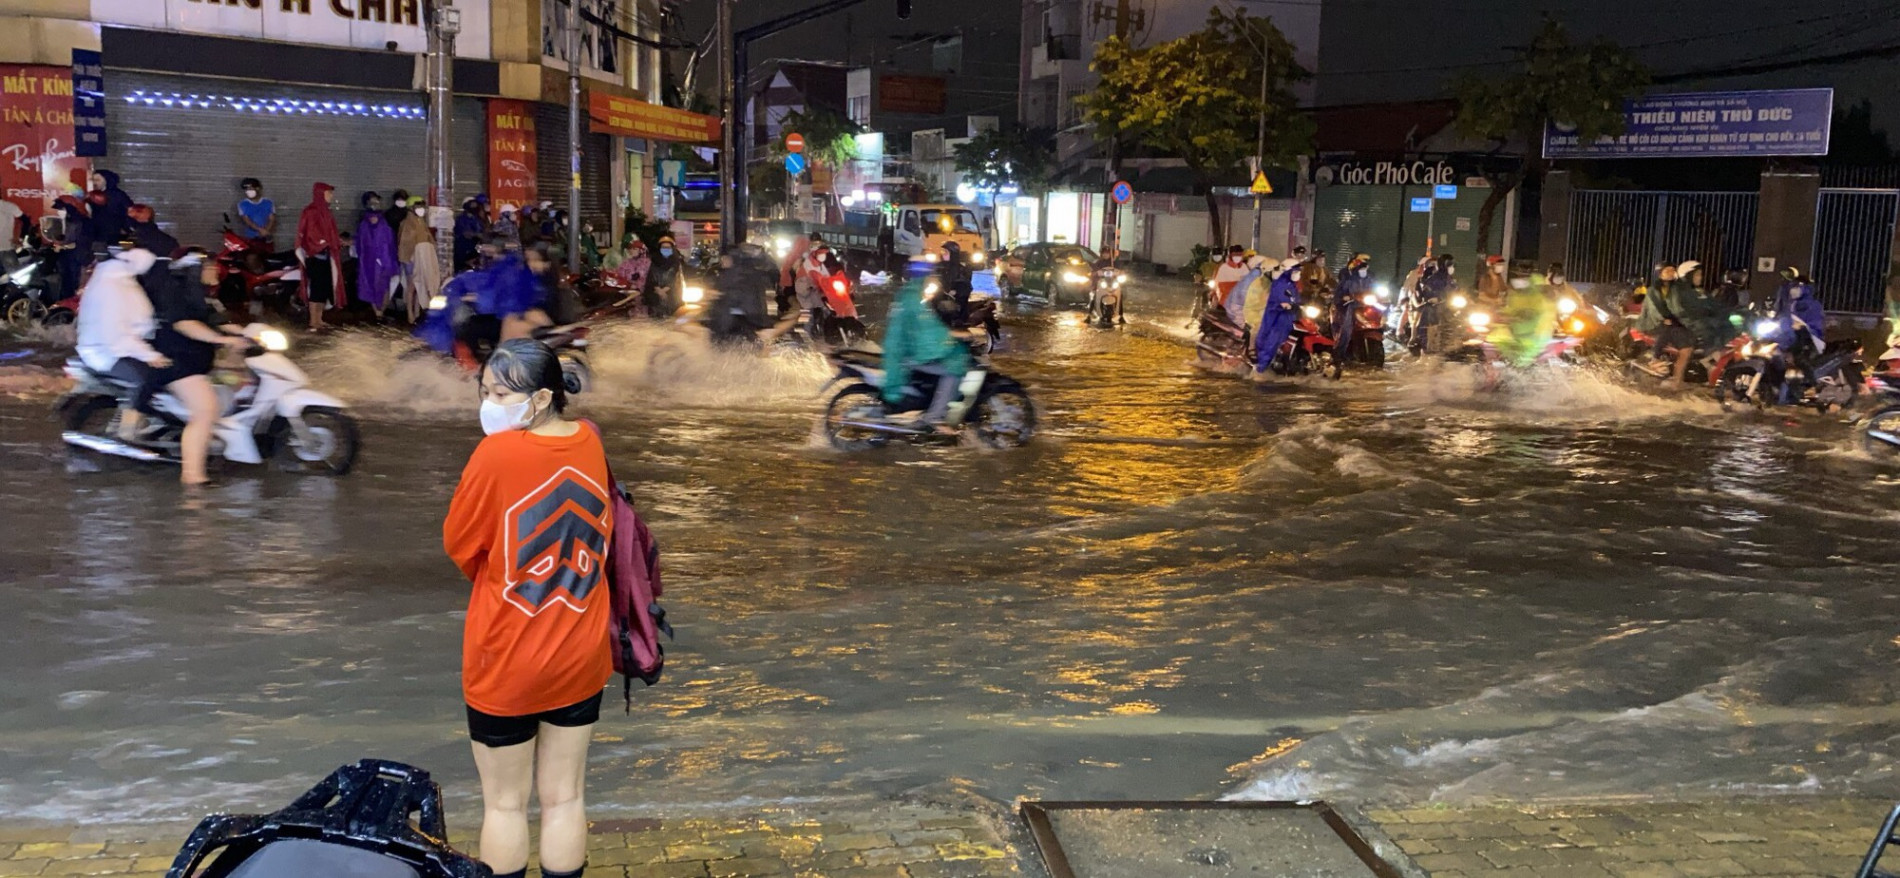 Mưa xối xả trong đêm khiến nhiều đường và nhà ở TP.HCM bị ngập nặng, người dân hì hục tát nước - Ảnh 8.